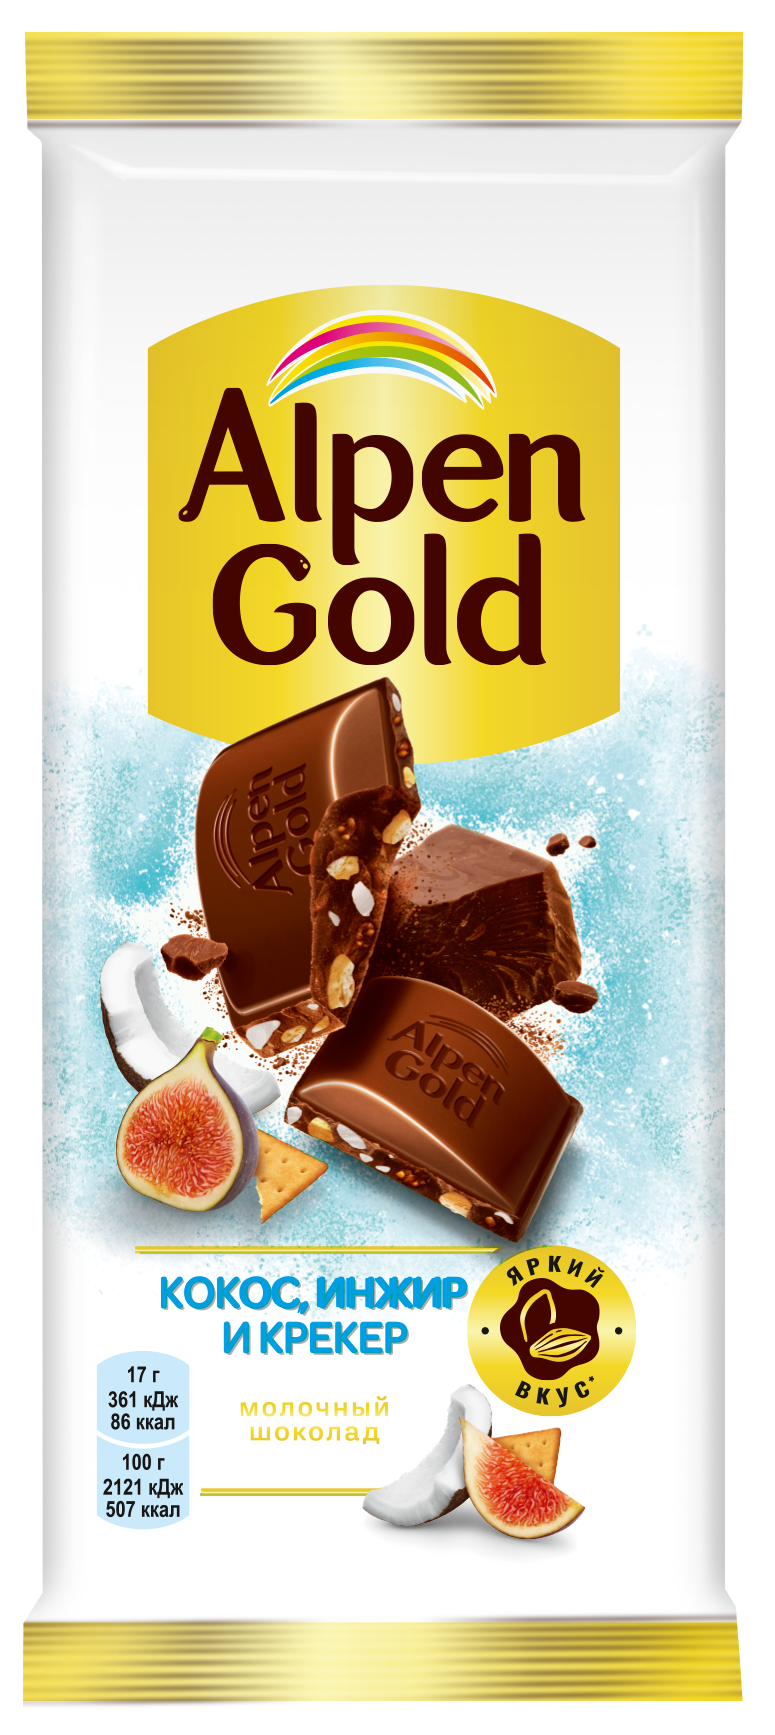 Шоколад Alpen Gold молочный инжир кокос соленый крекер 85 г